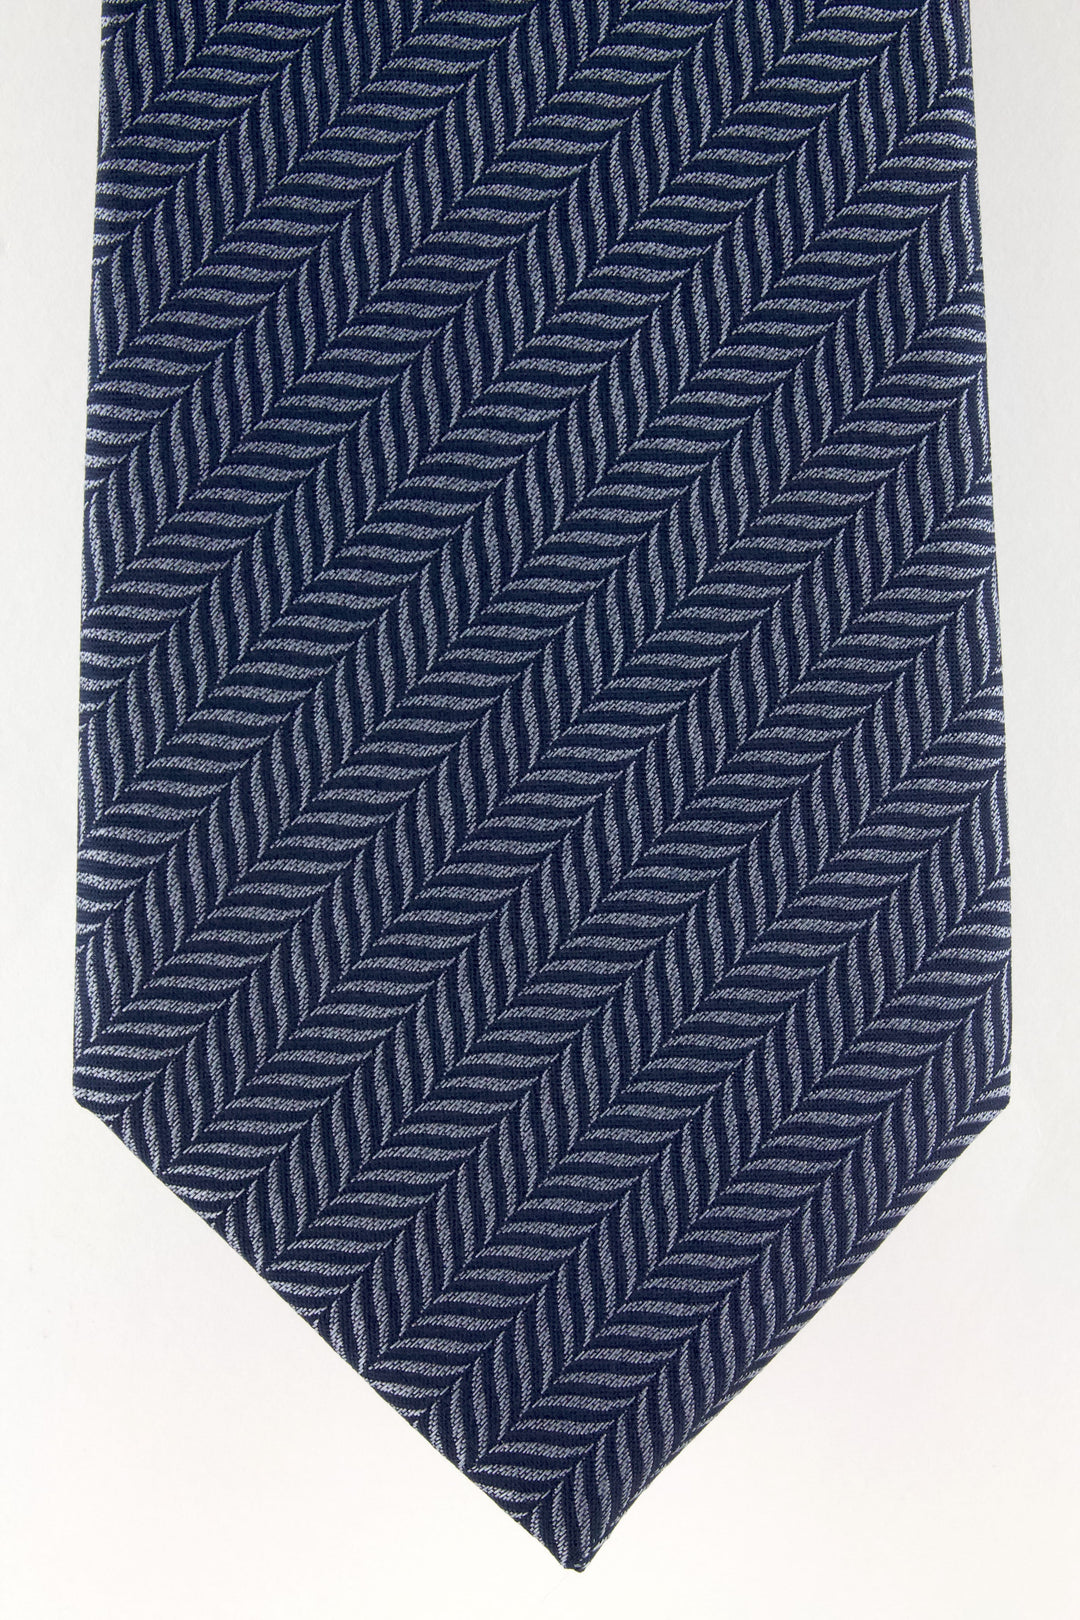 Cravate en soie tissée gris motif chevron marine